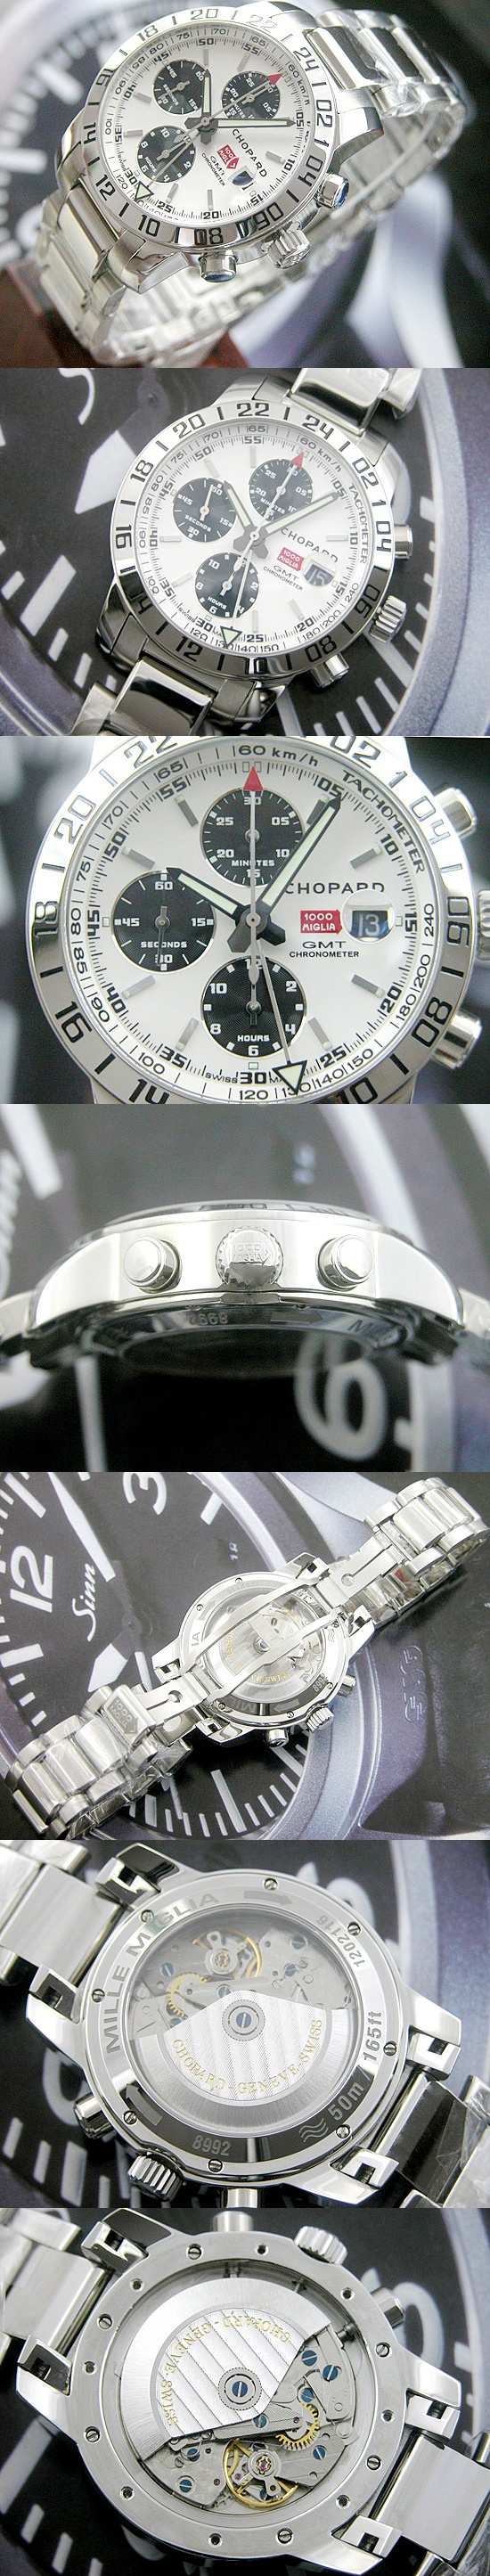 おしゃれなブランド時計がショパール-CHOPARD-ミッレミリア-1158992-3002-ag 男性用腕時計を提供します.